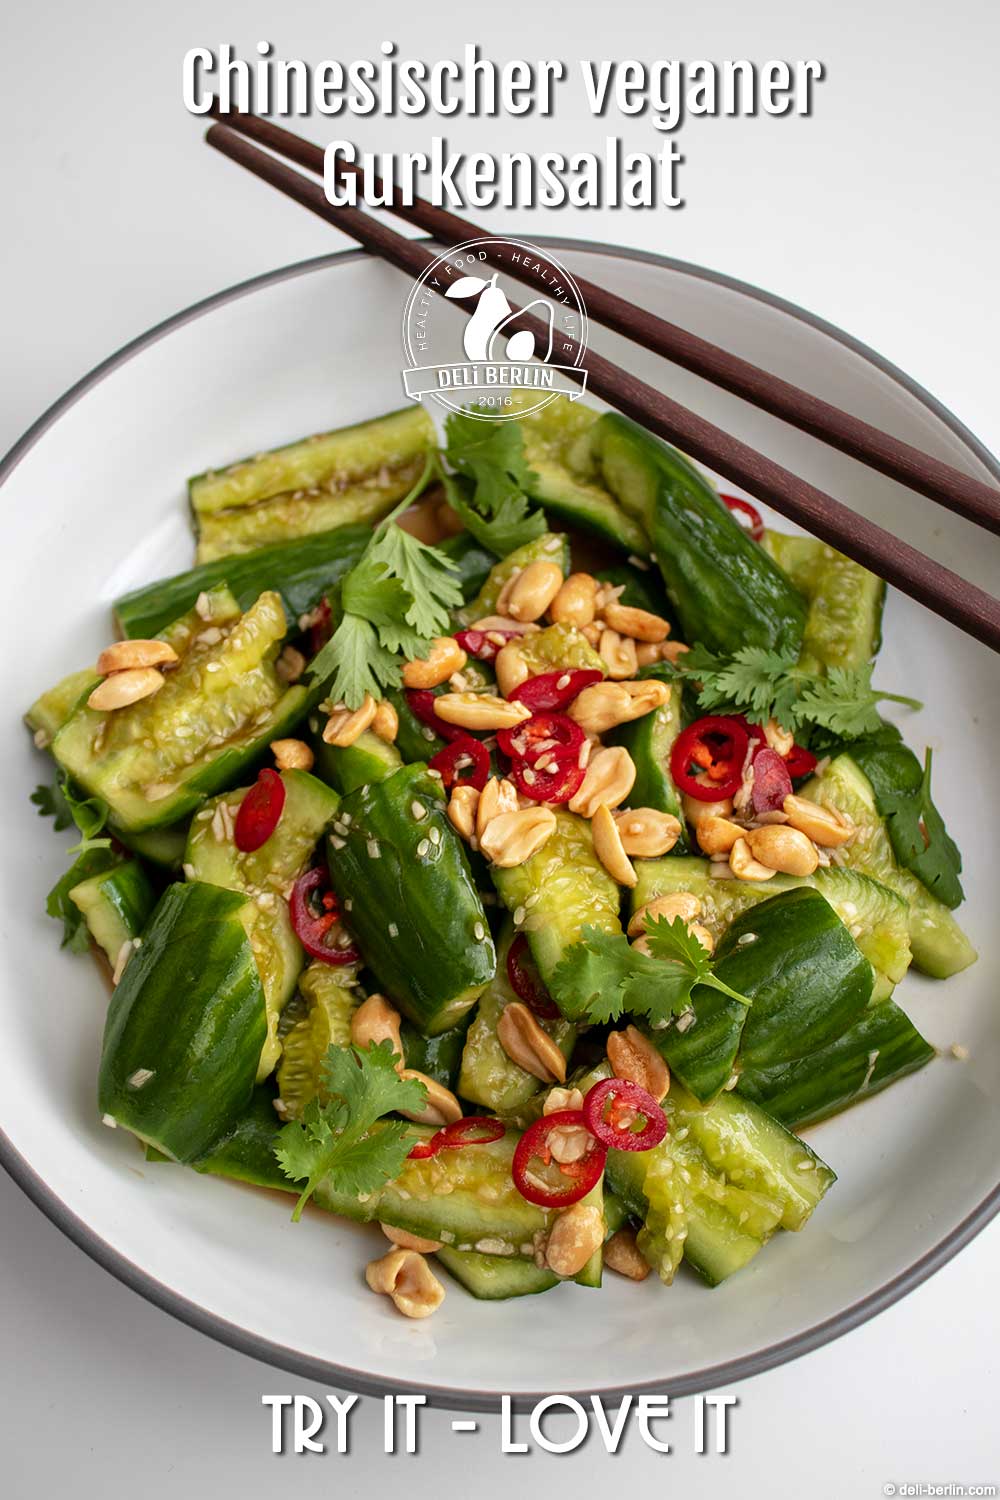 chinesischer veganer Gurkensalat